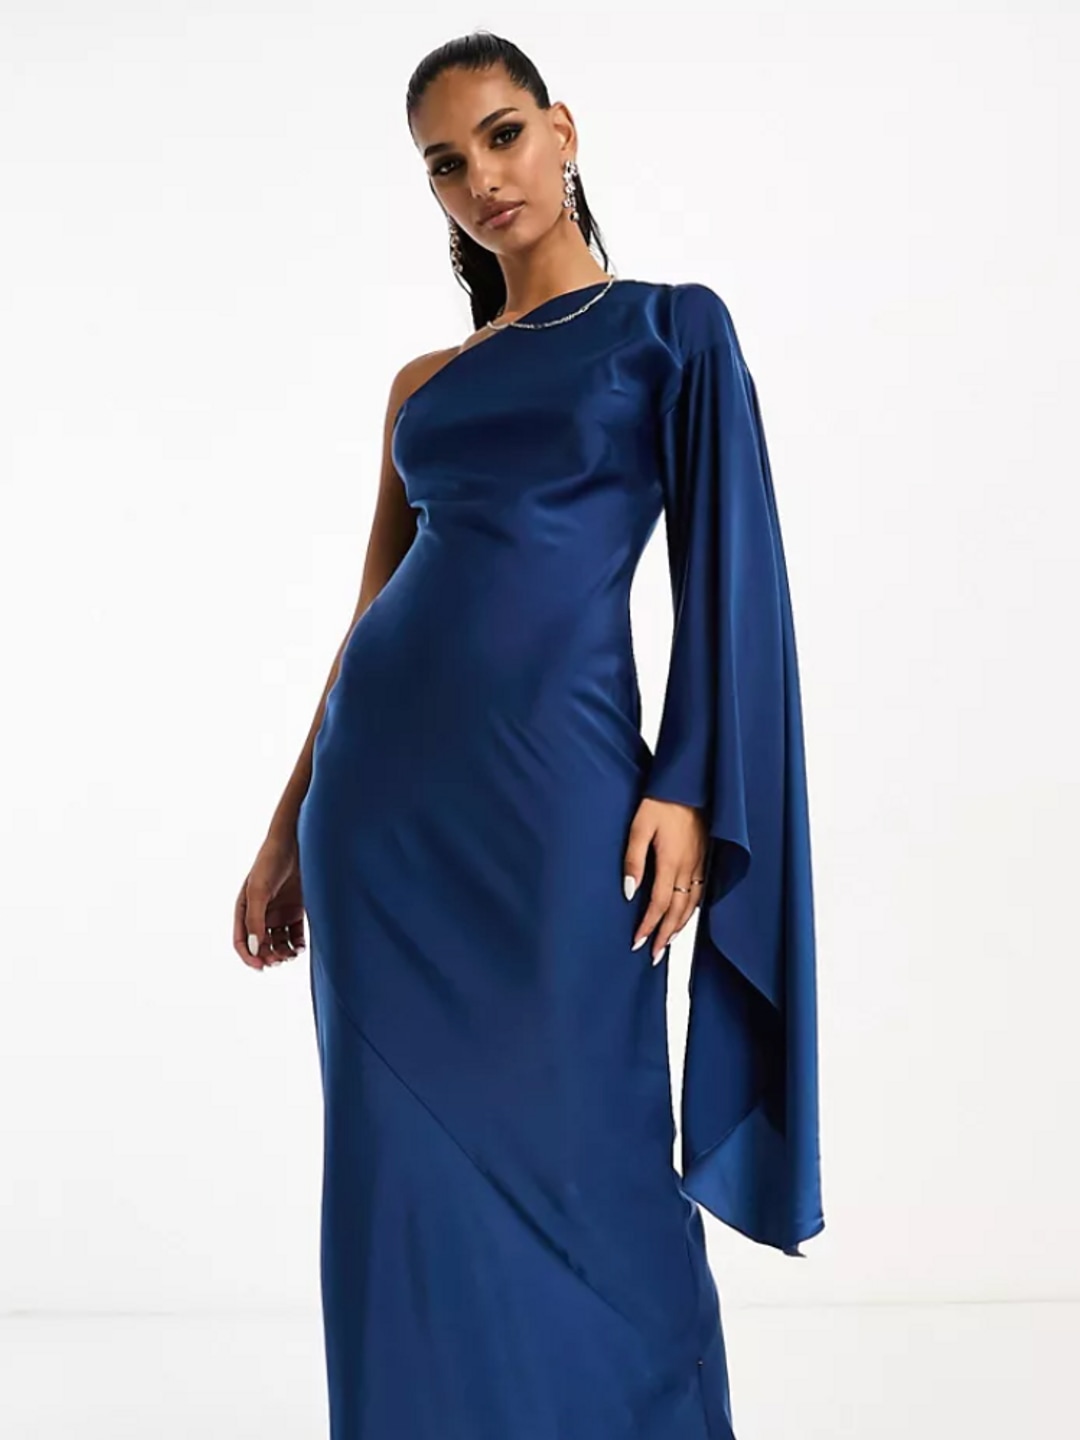 Asos model wearing blue one-shoulder dress